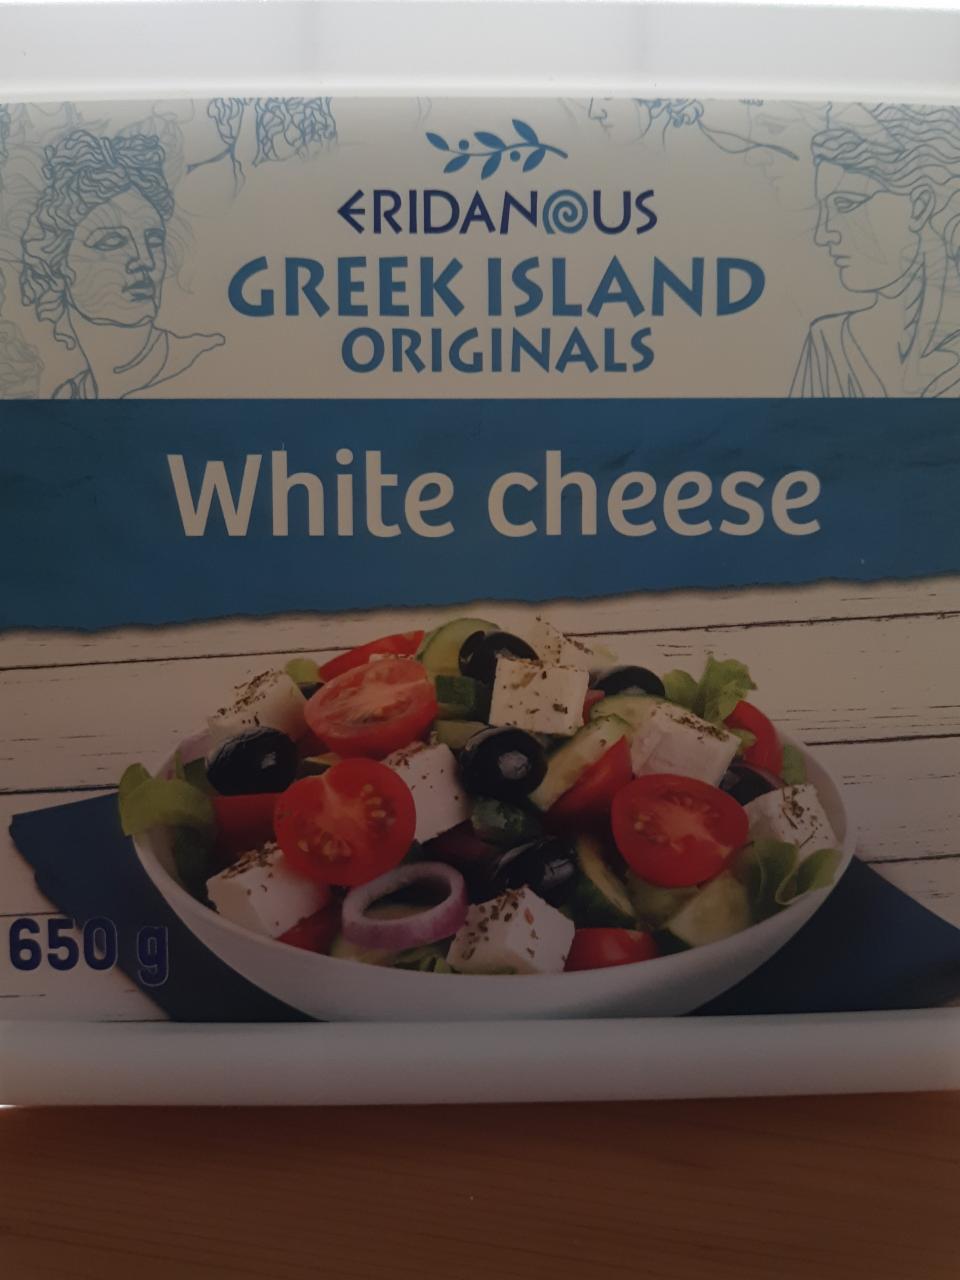 Fotografie - white cheese eridanous